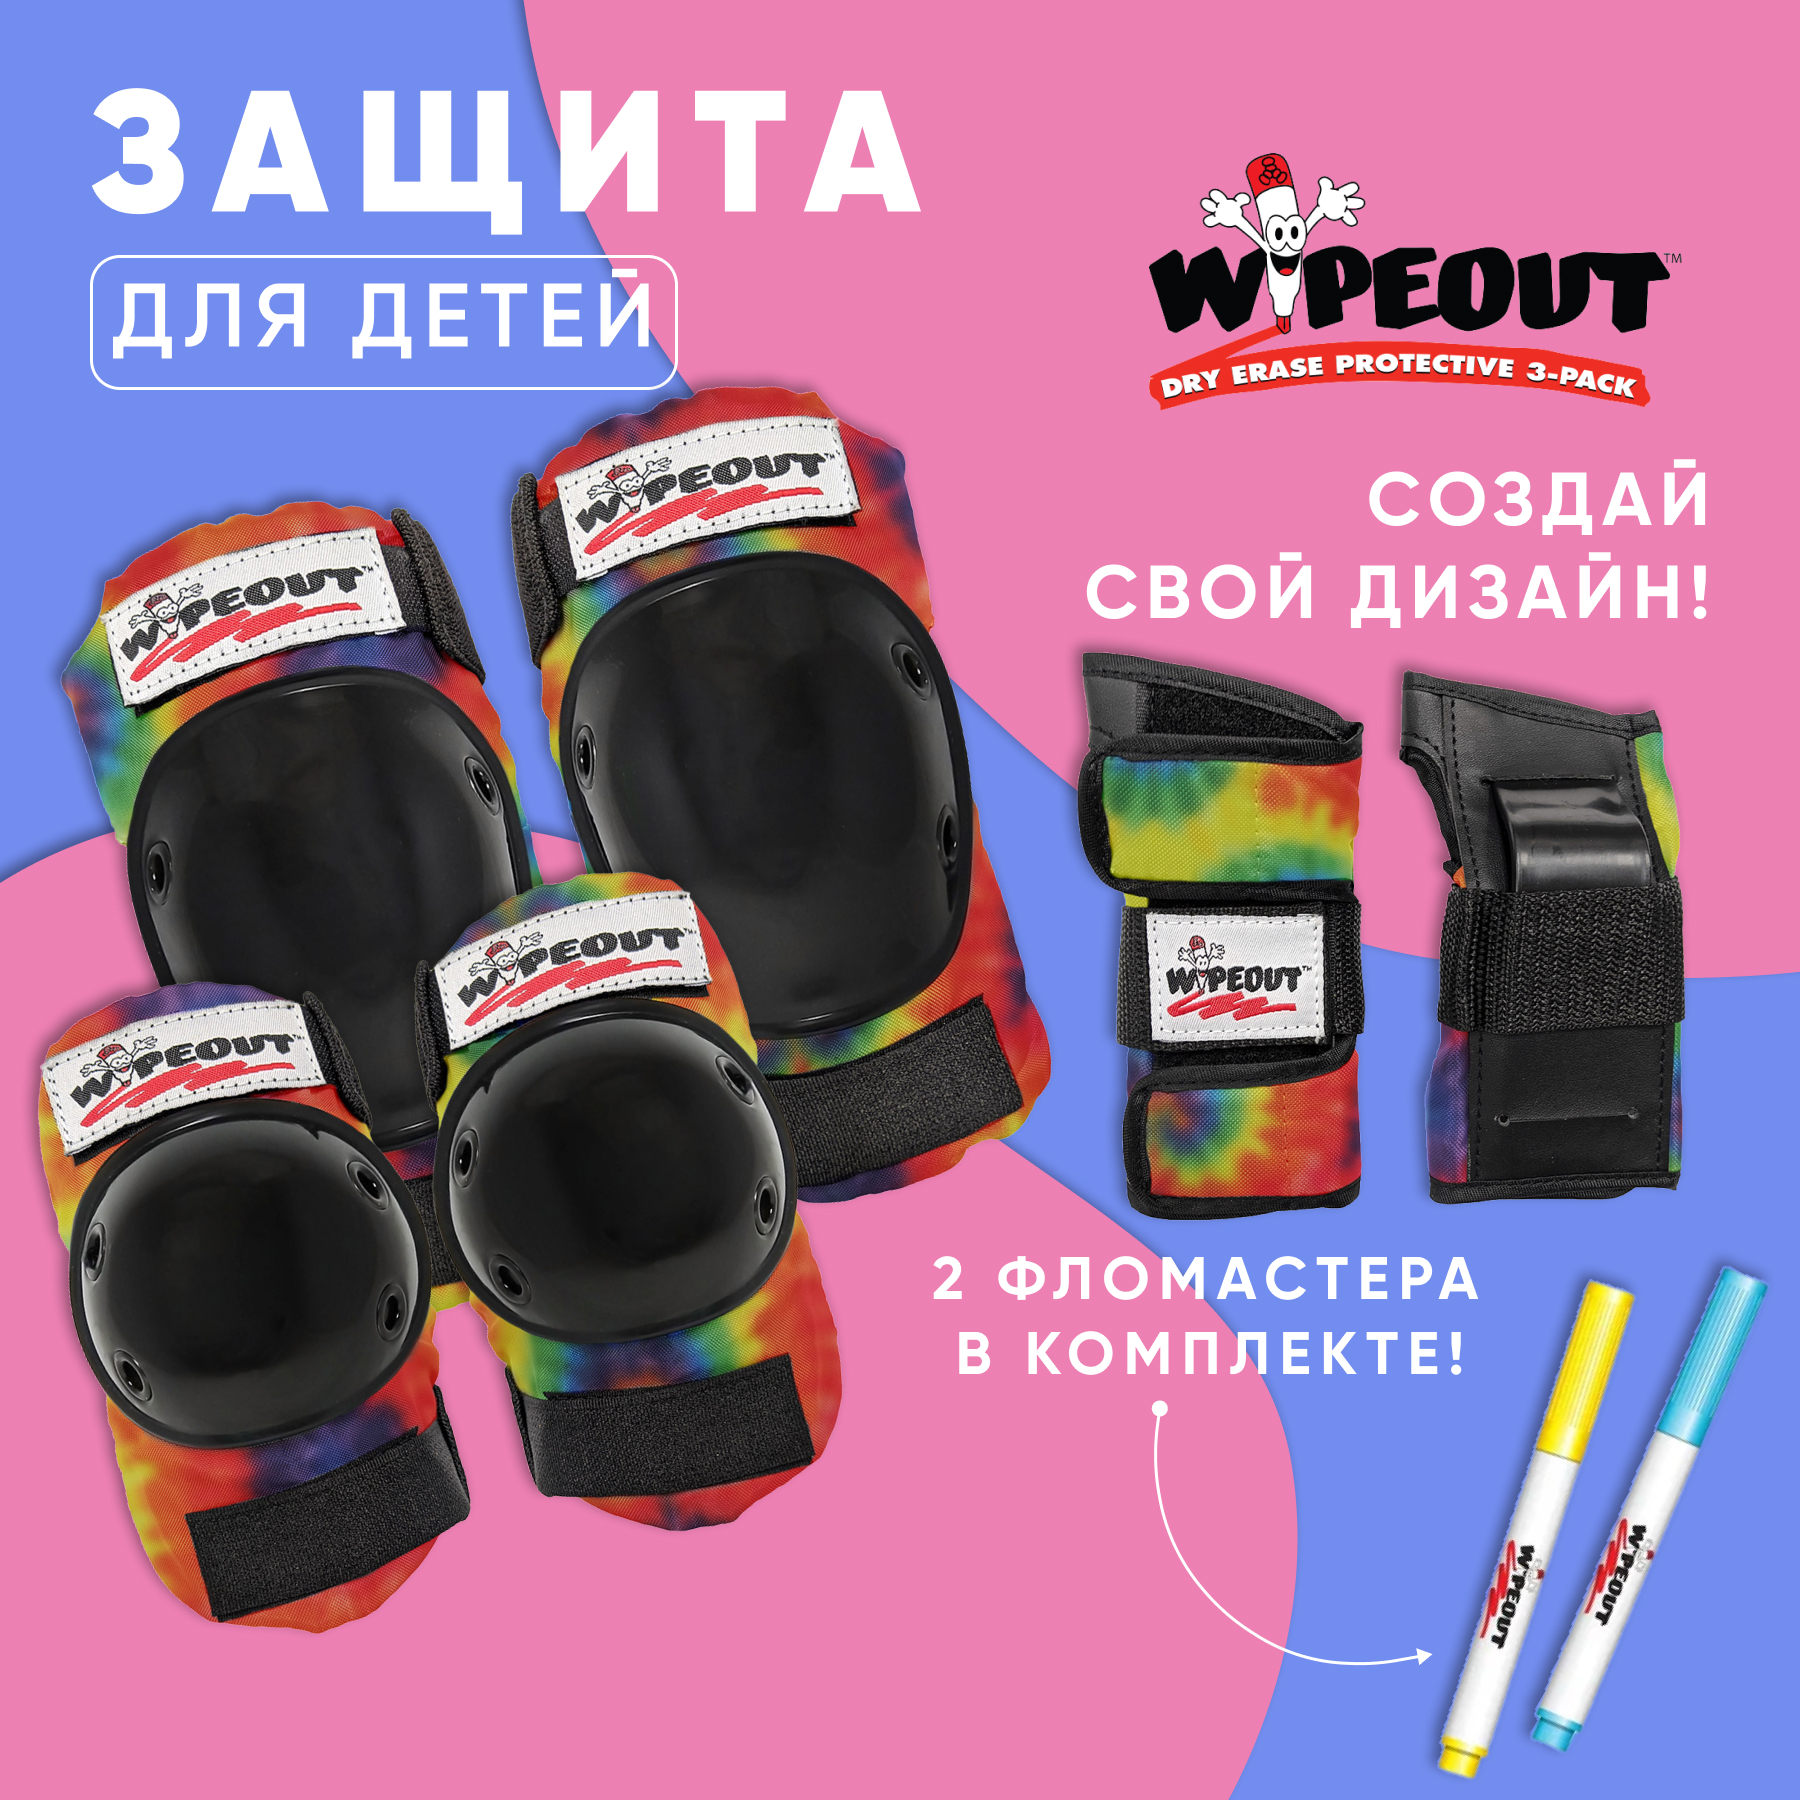 Комплект защиты 3-в-1 WIPEOUT Tie-Dye разноцветный с фломастерами и трафаретами наколенники налокотники - фото 1